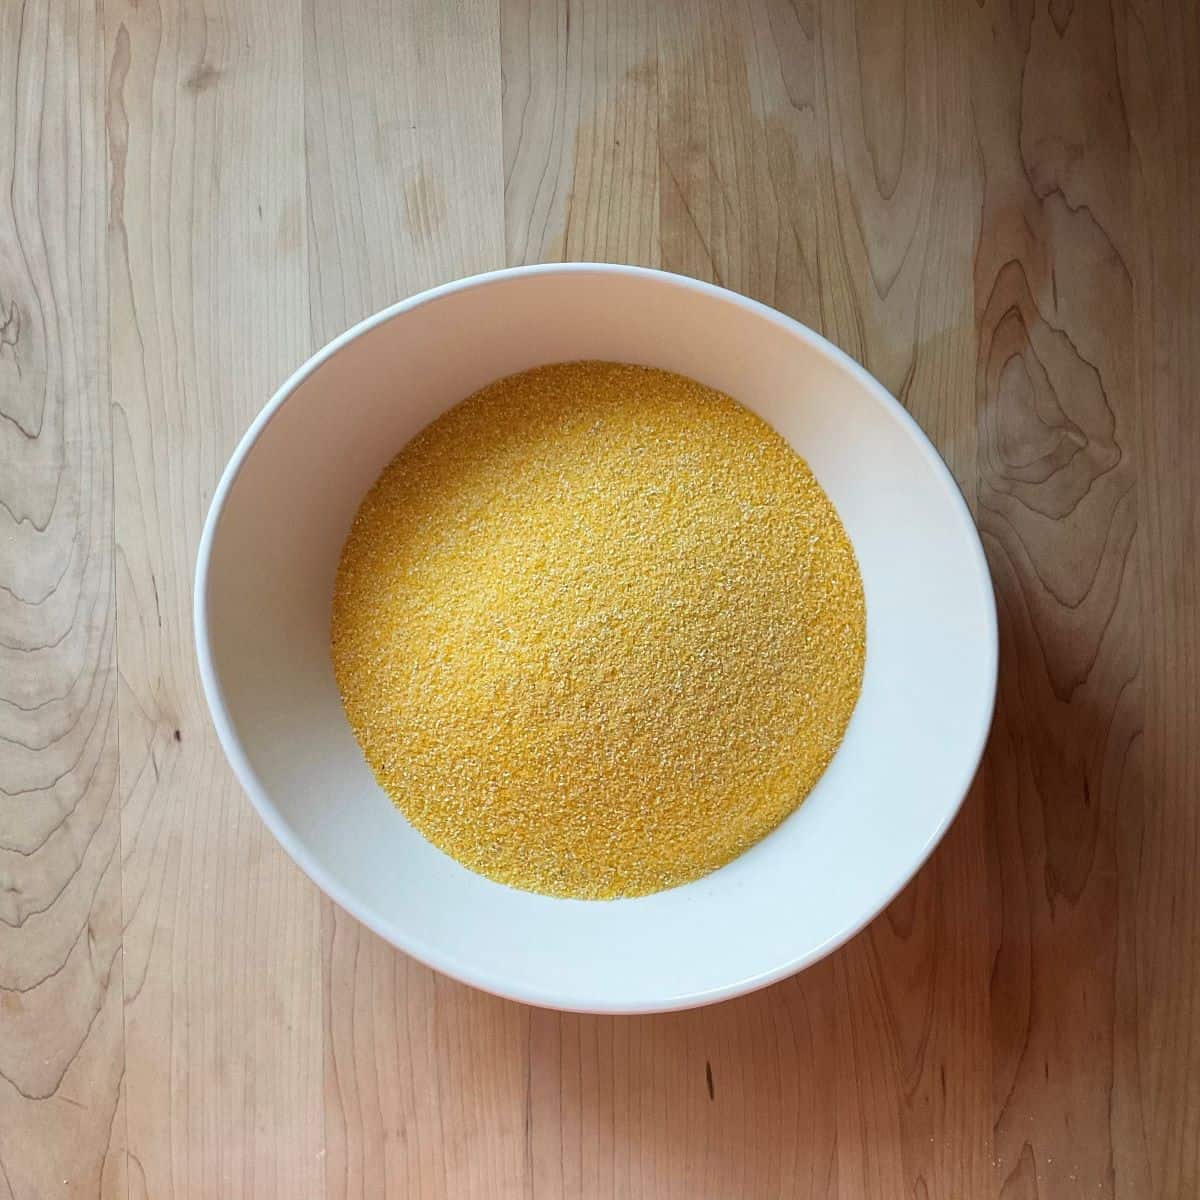 Cornmeal in a bowl.